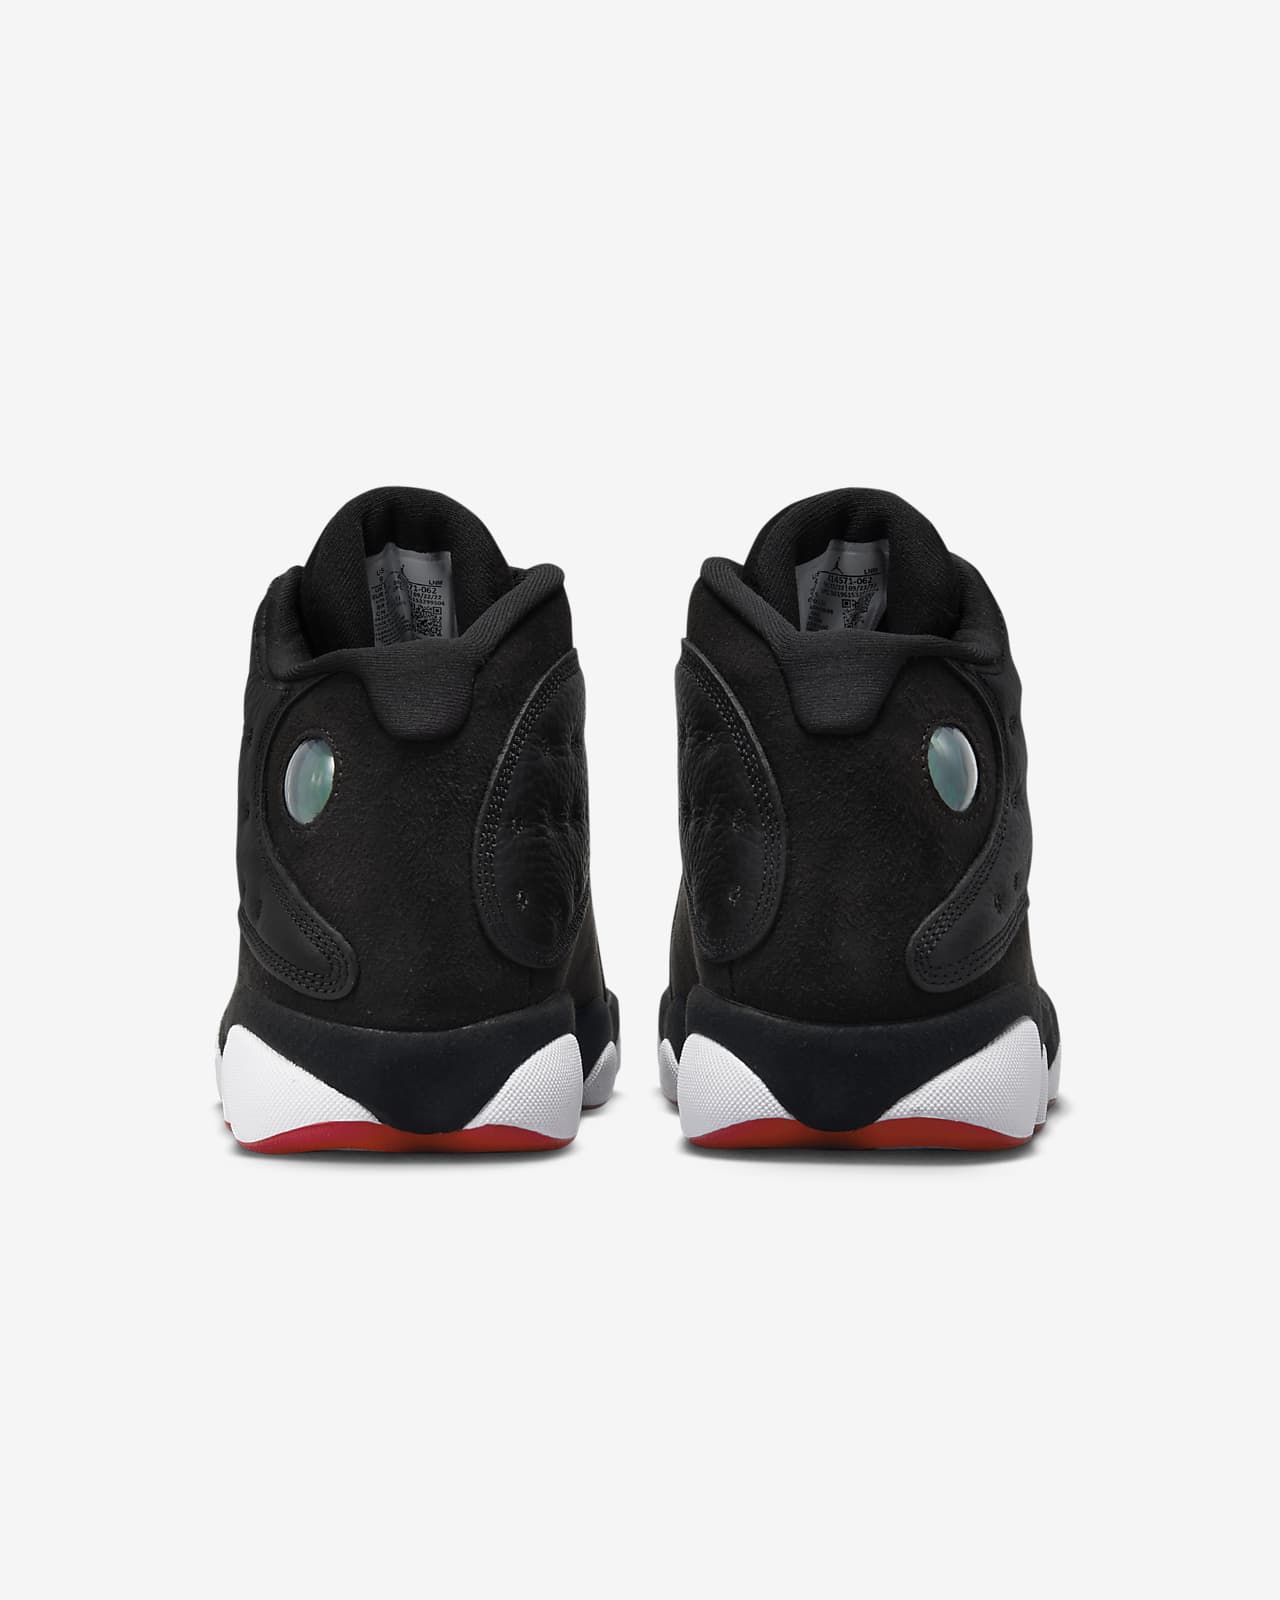 Calzado Jordan 13 Nike.com